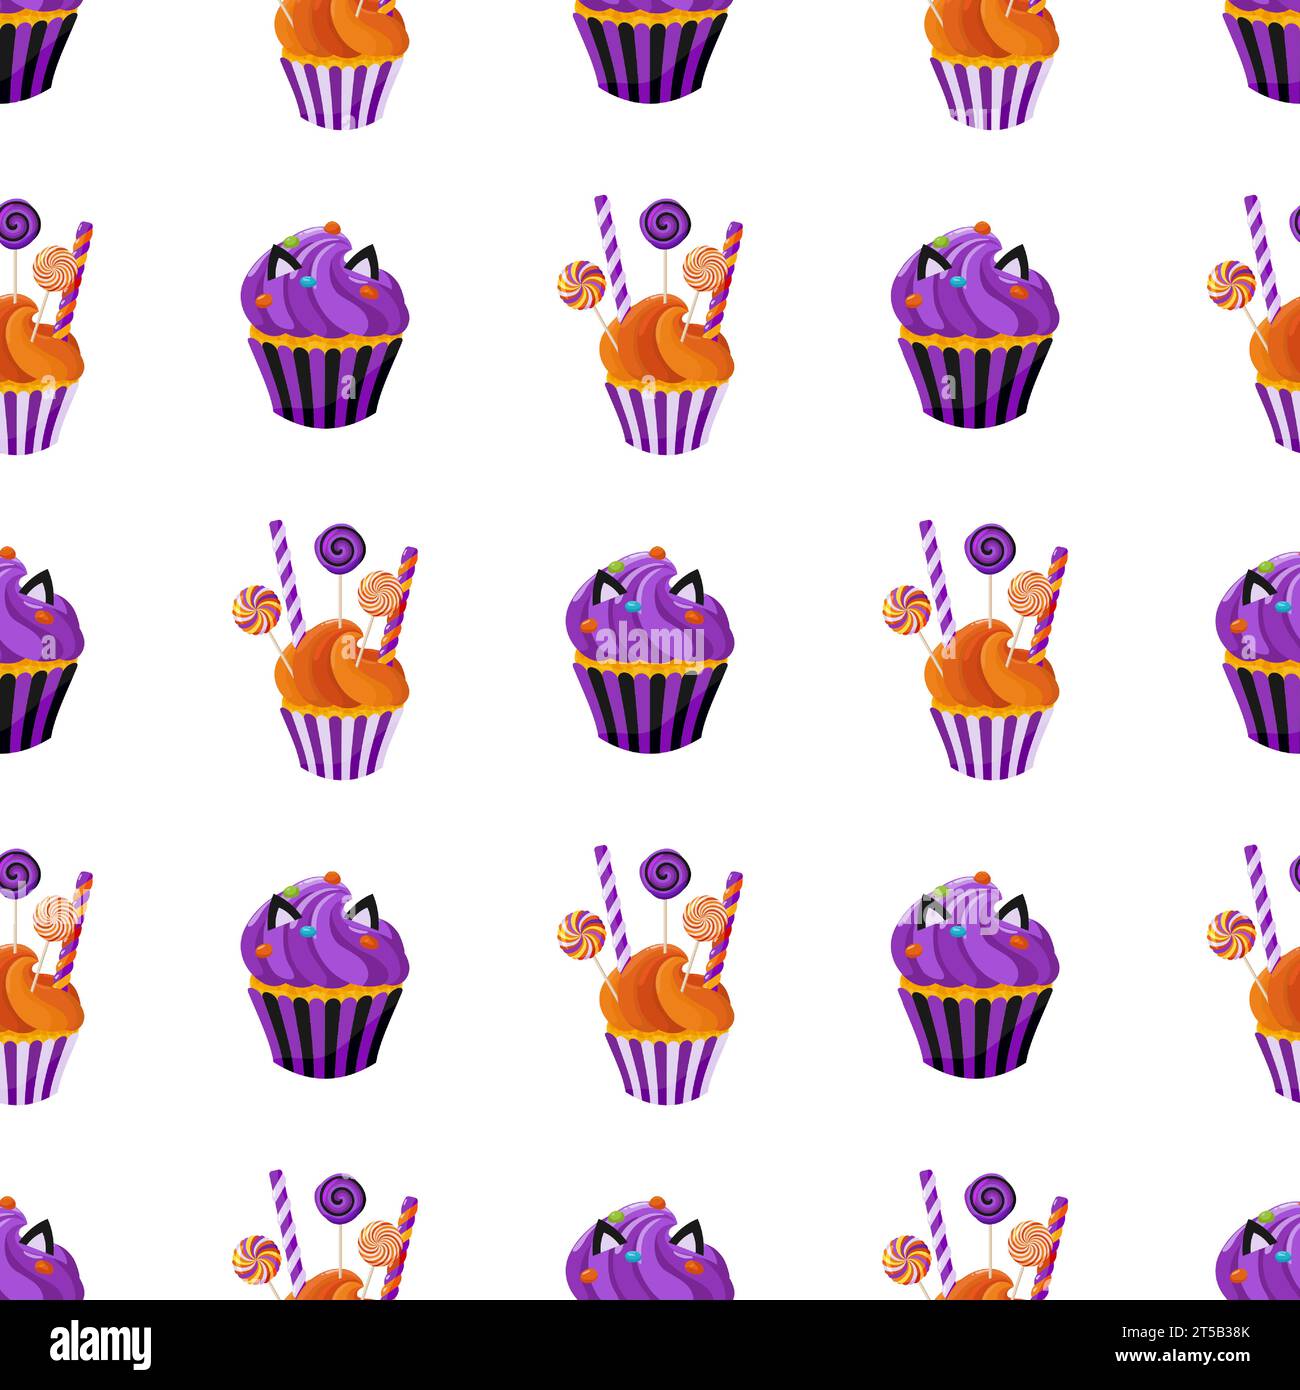 Hintergrund der süßen Leckereien, einschließlich Süßigkeiten, Süßwaren und Cremesucksäcke. Nahtloses Muster mit Cupcakes. Zum Einpacken von Papier, Verpackung, Stoff, W Stock Vektor